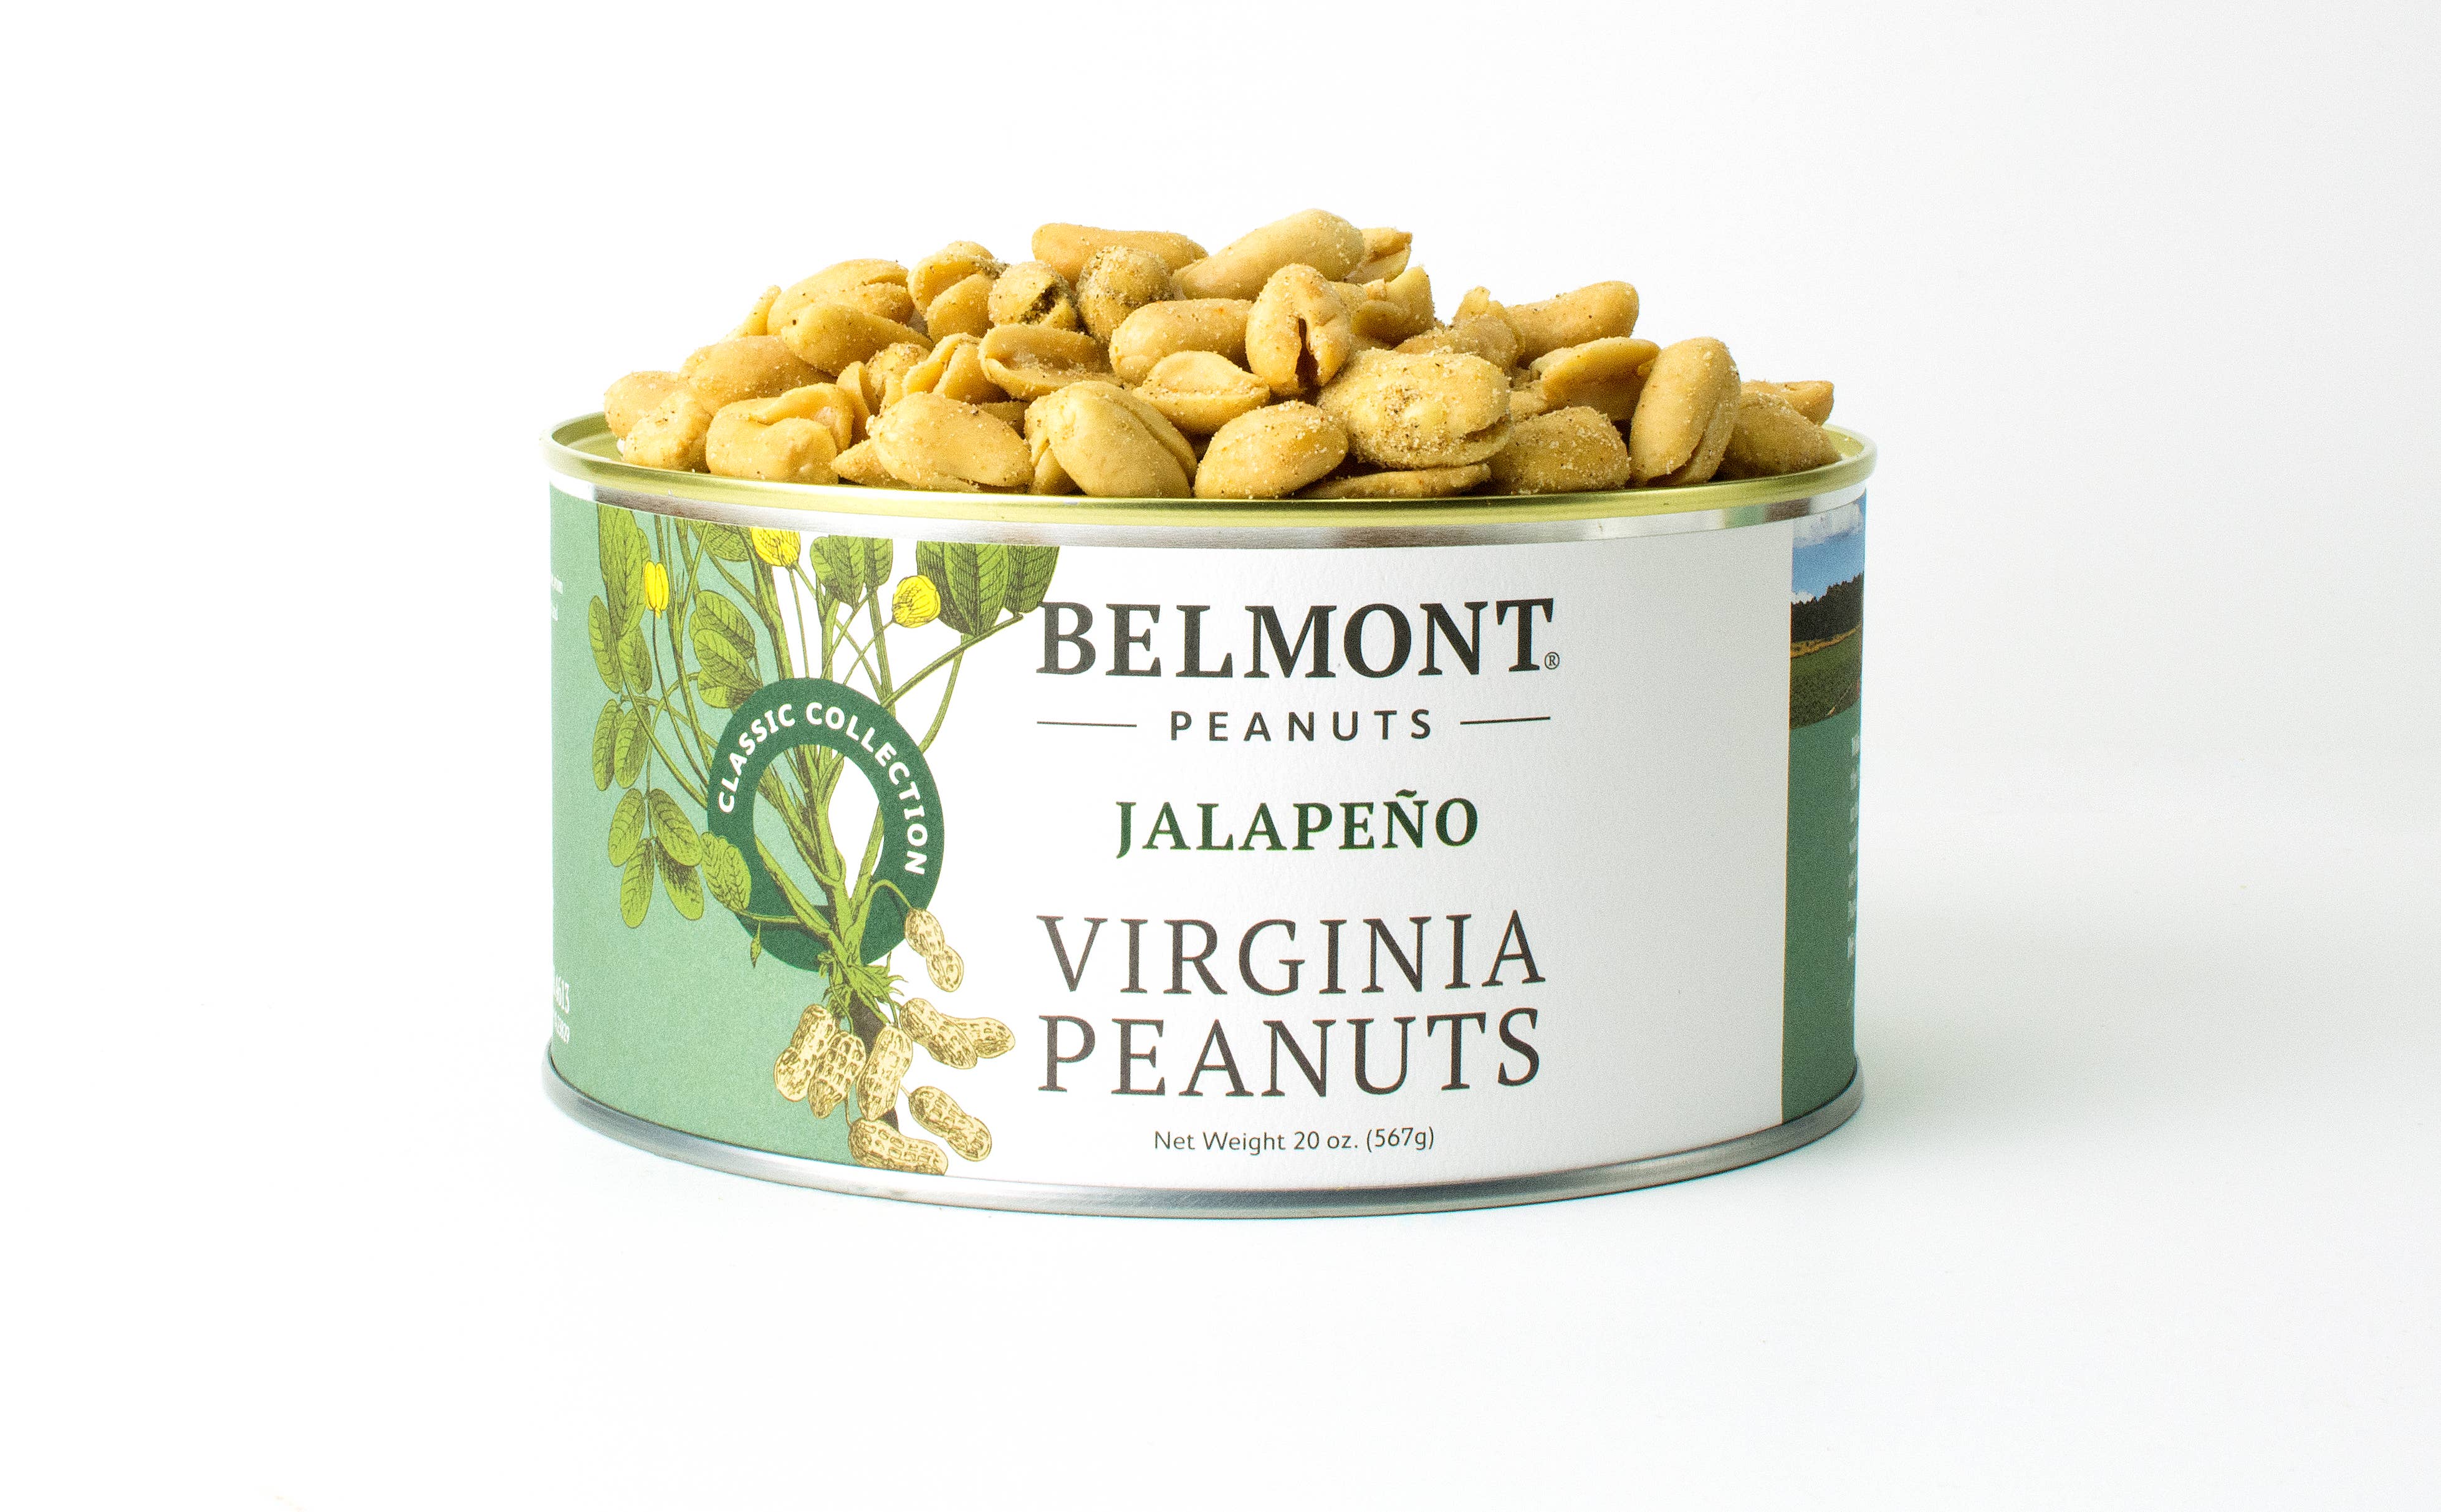 Belmont Peanuts - Jalapeno Sea Salt Virginia Peanuts: 10oz